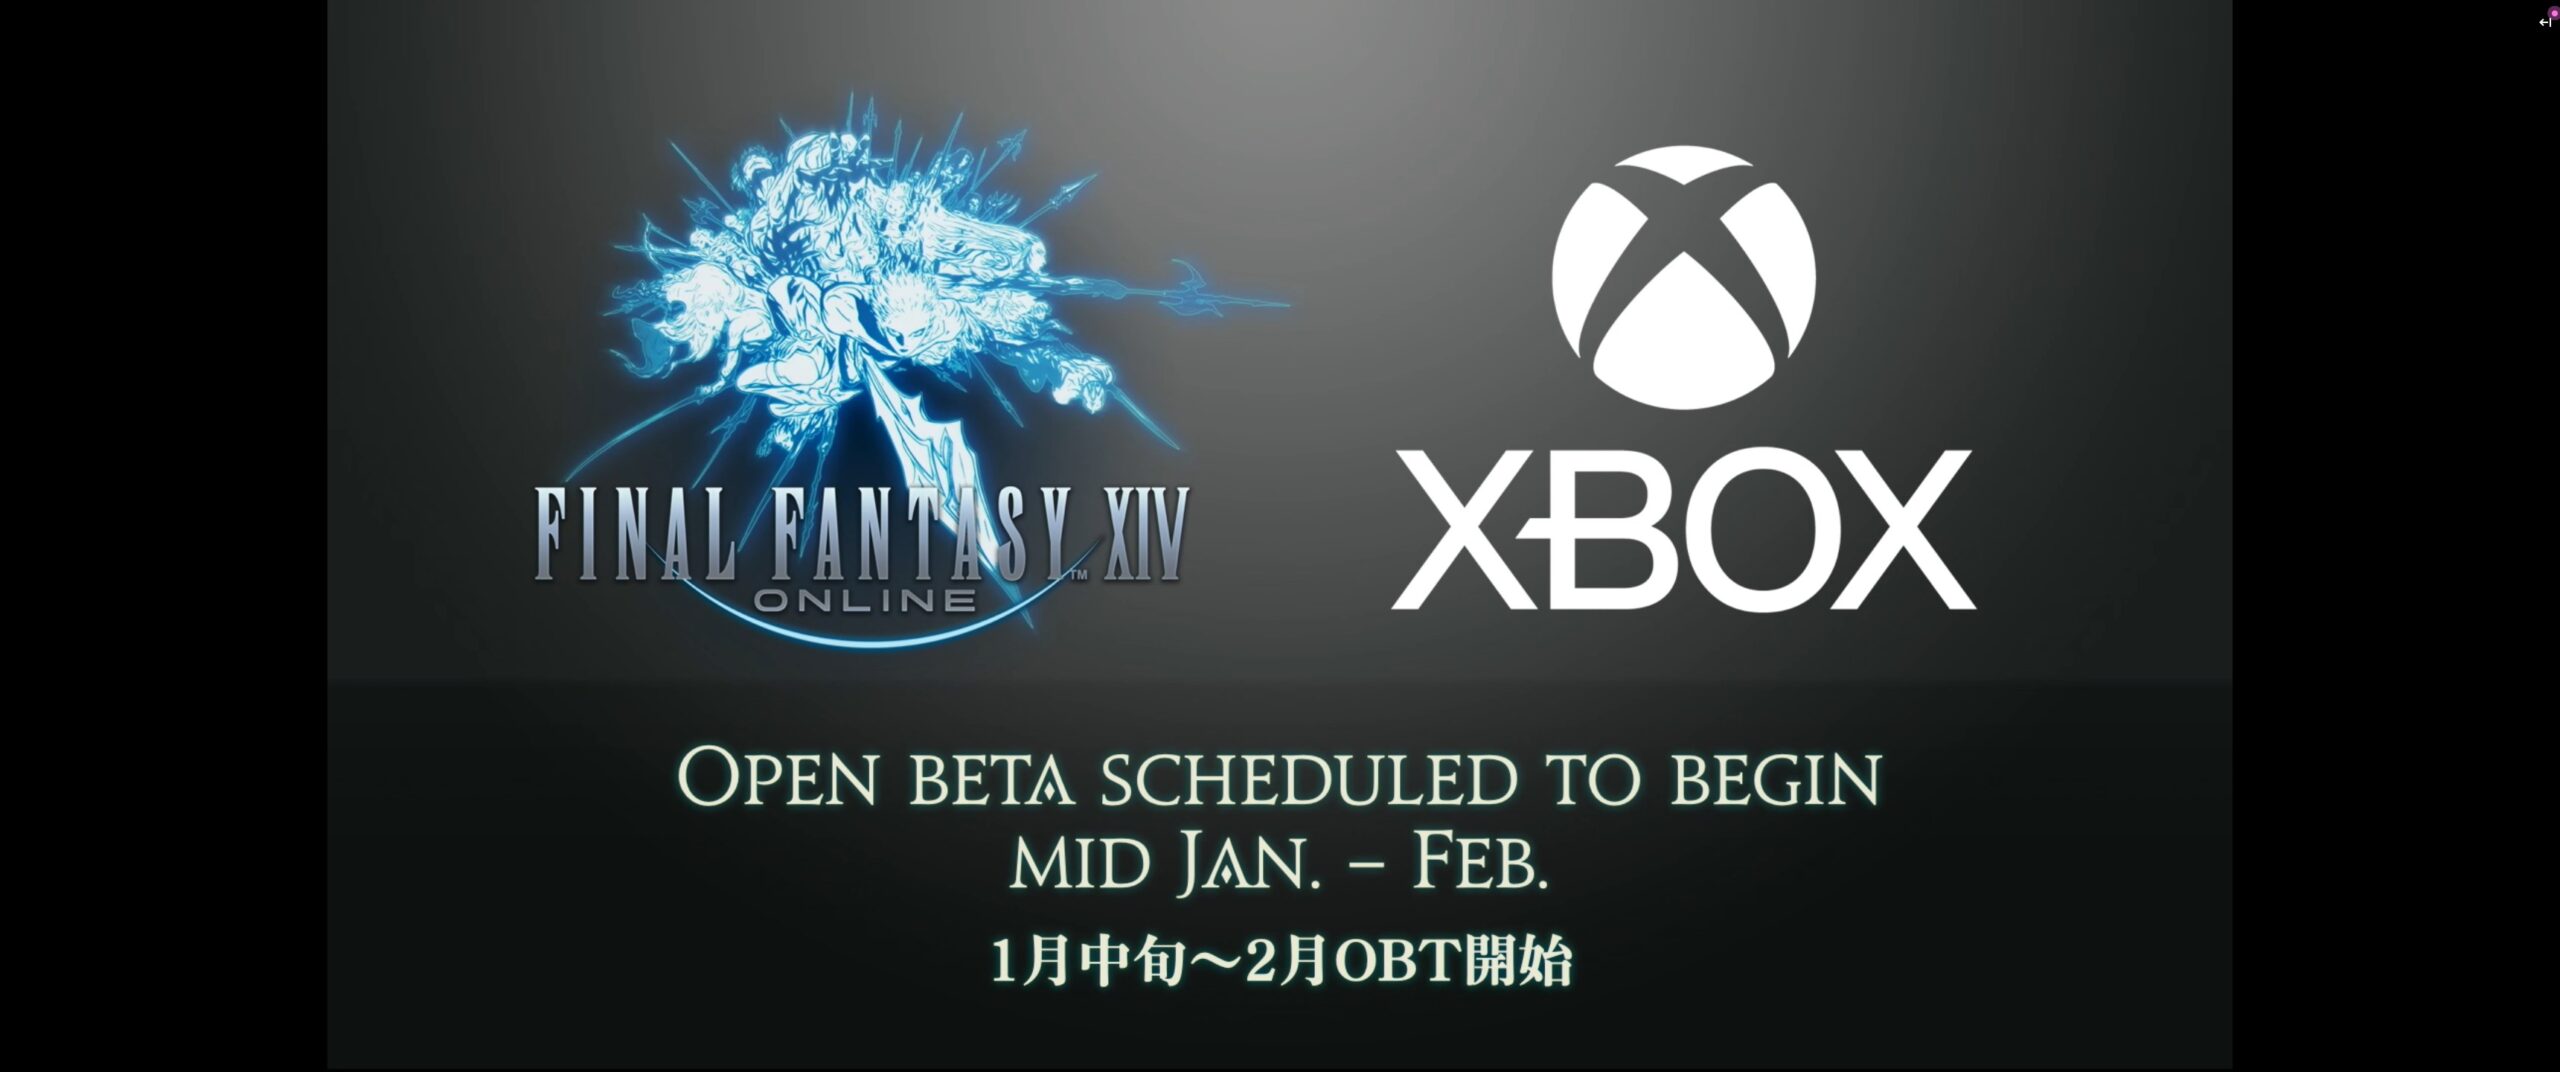 Square Enix объявили сроки открытой бета-версии Final Fantasy XIV на Xbox: с сайта NEWXBOXONE.RU